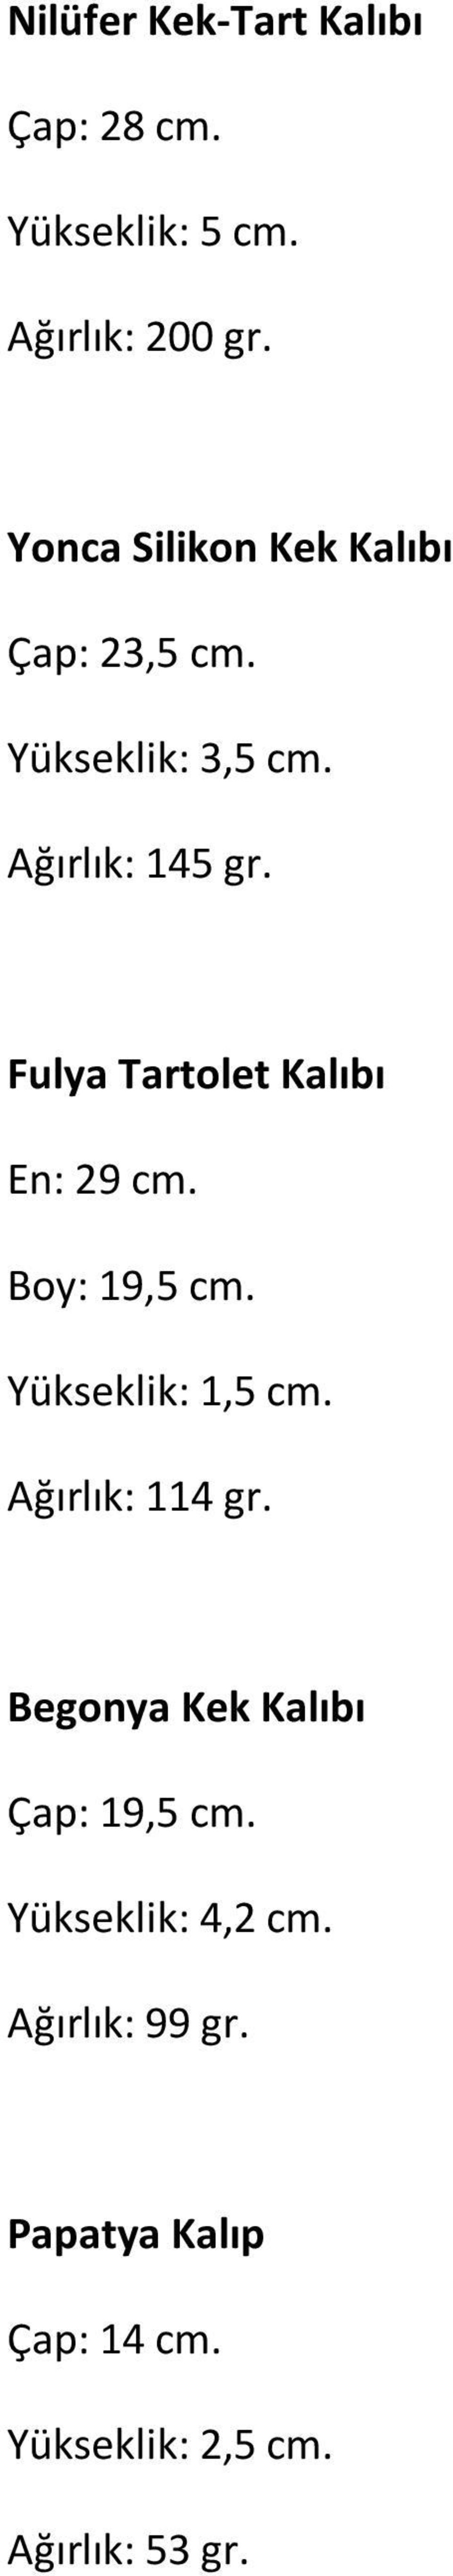 Fulya Tartolet Kalıbı En: 29 cm. Boy: 19,5 cm. Yükseklik: 1,5 cm. Ağırlık: 114 gr.